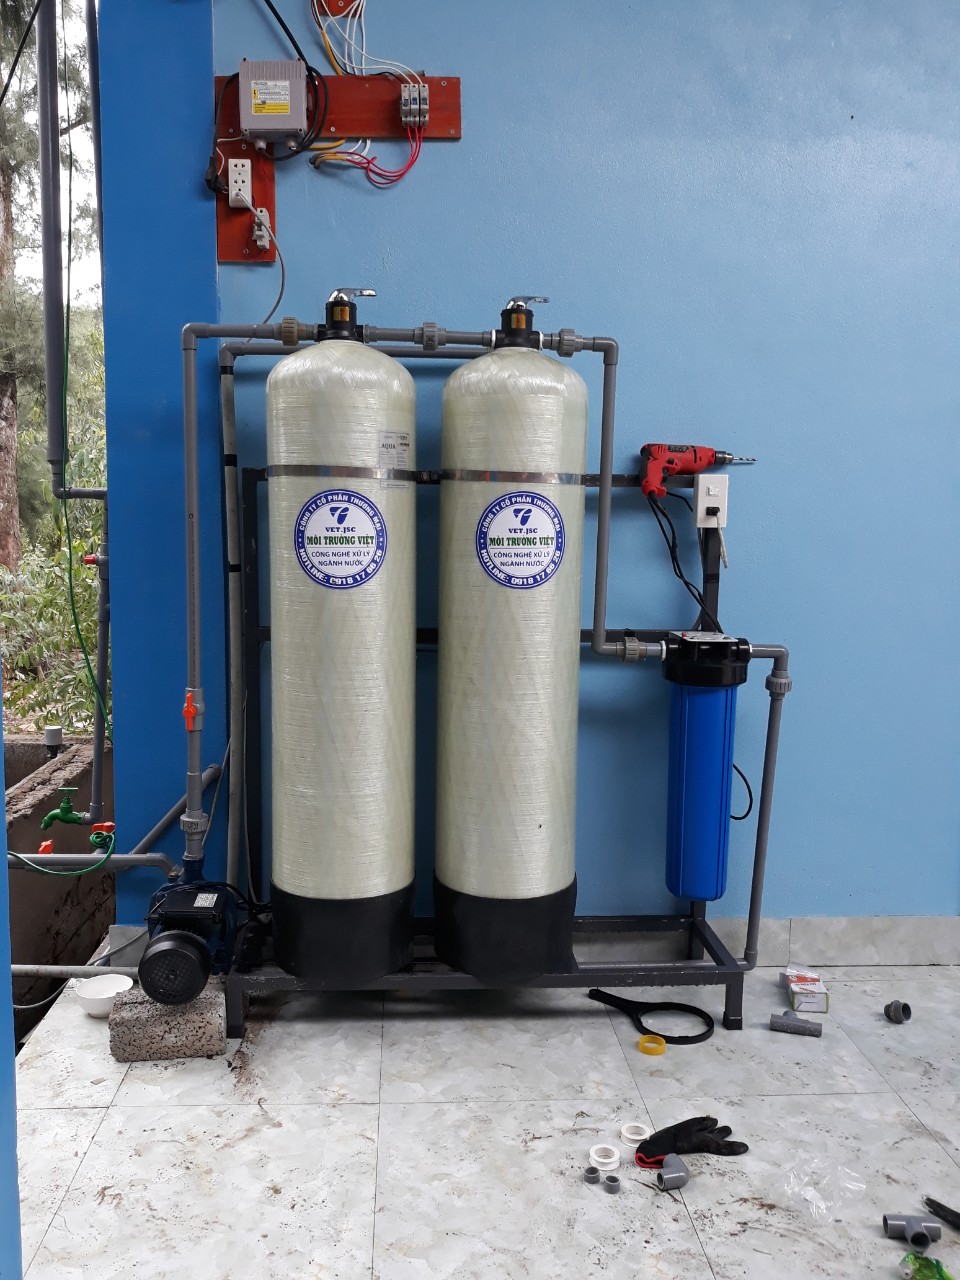 hệ thống lọc nước ở Quỳnh Lưu, máy lọc nước ở quỳnh lưu, máy lọc nước Hoàng Mai, May loc nuoc nghe an, may loc nuoc gia re 2